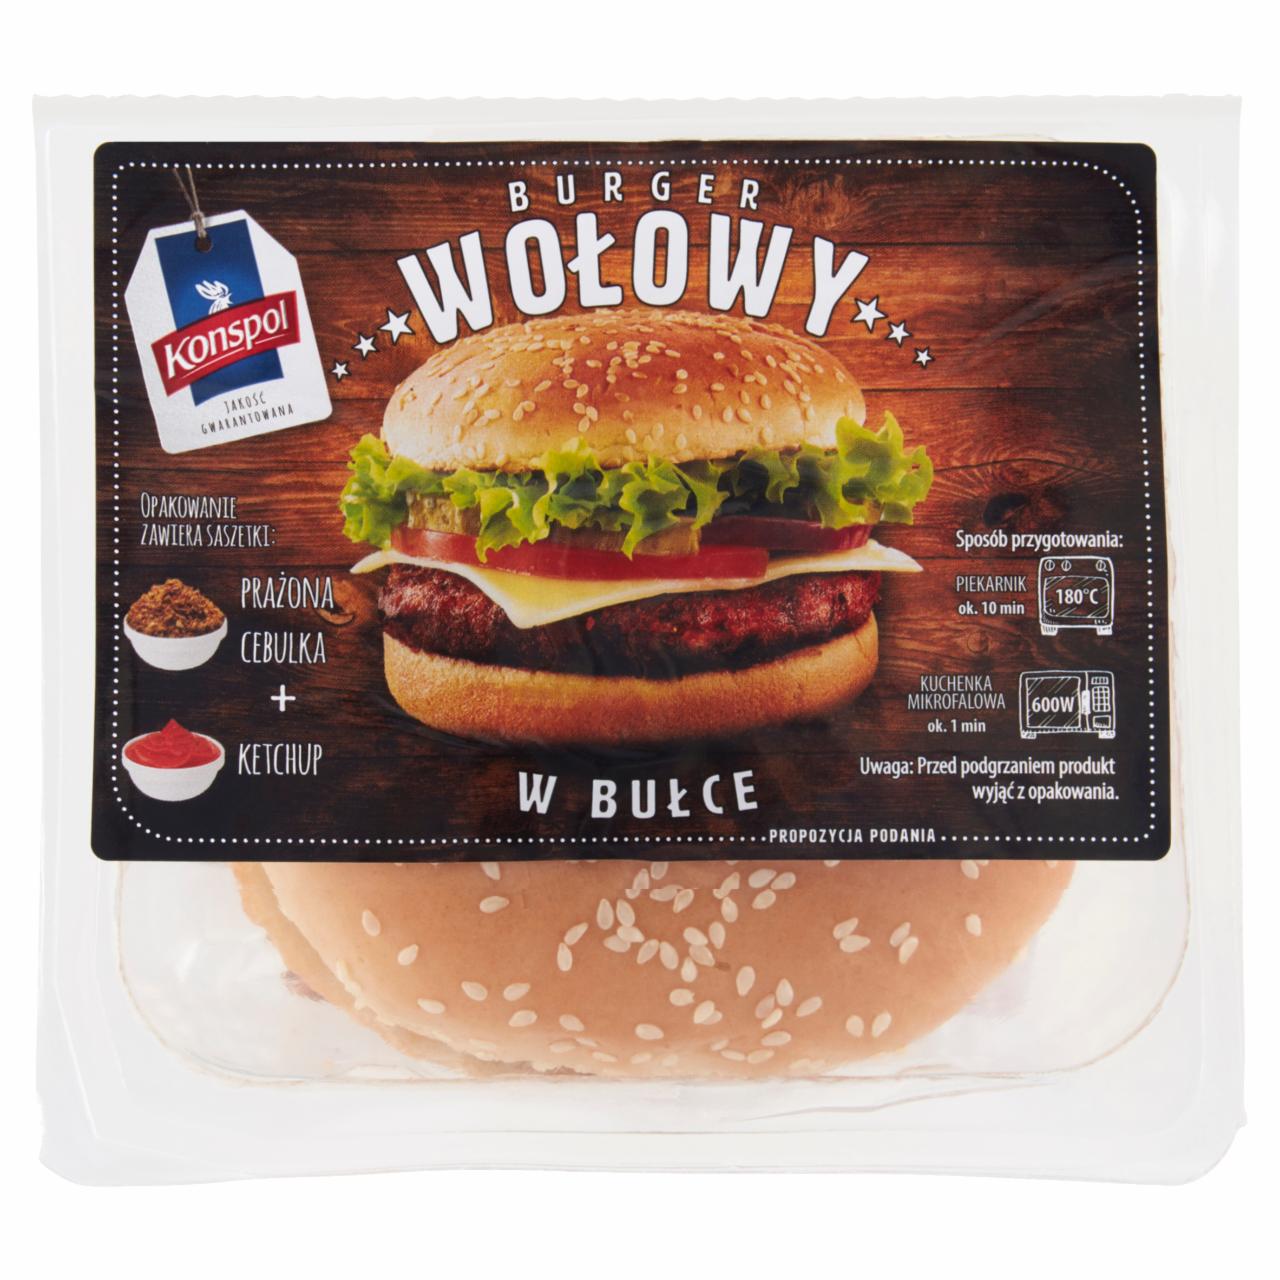 Zdjęcia - Burger wołowy w bułce Konspol